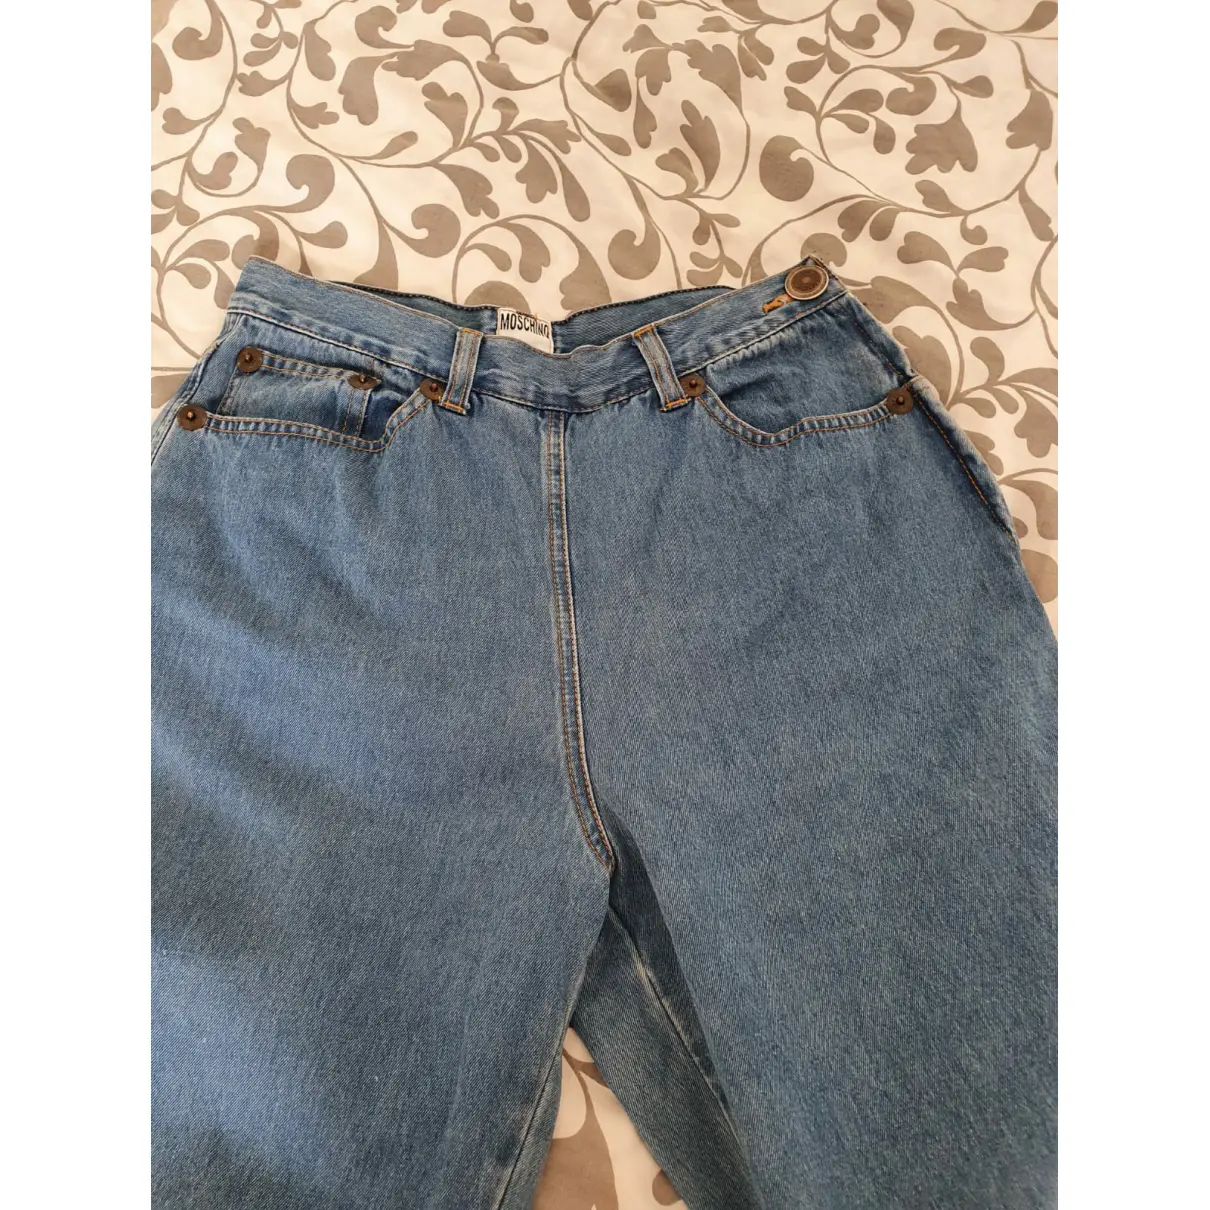 Buy Moschino Boyfriend jeans online